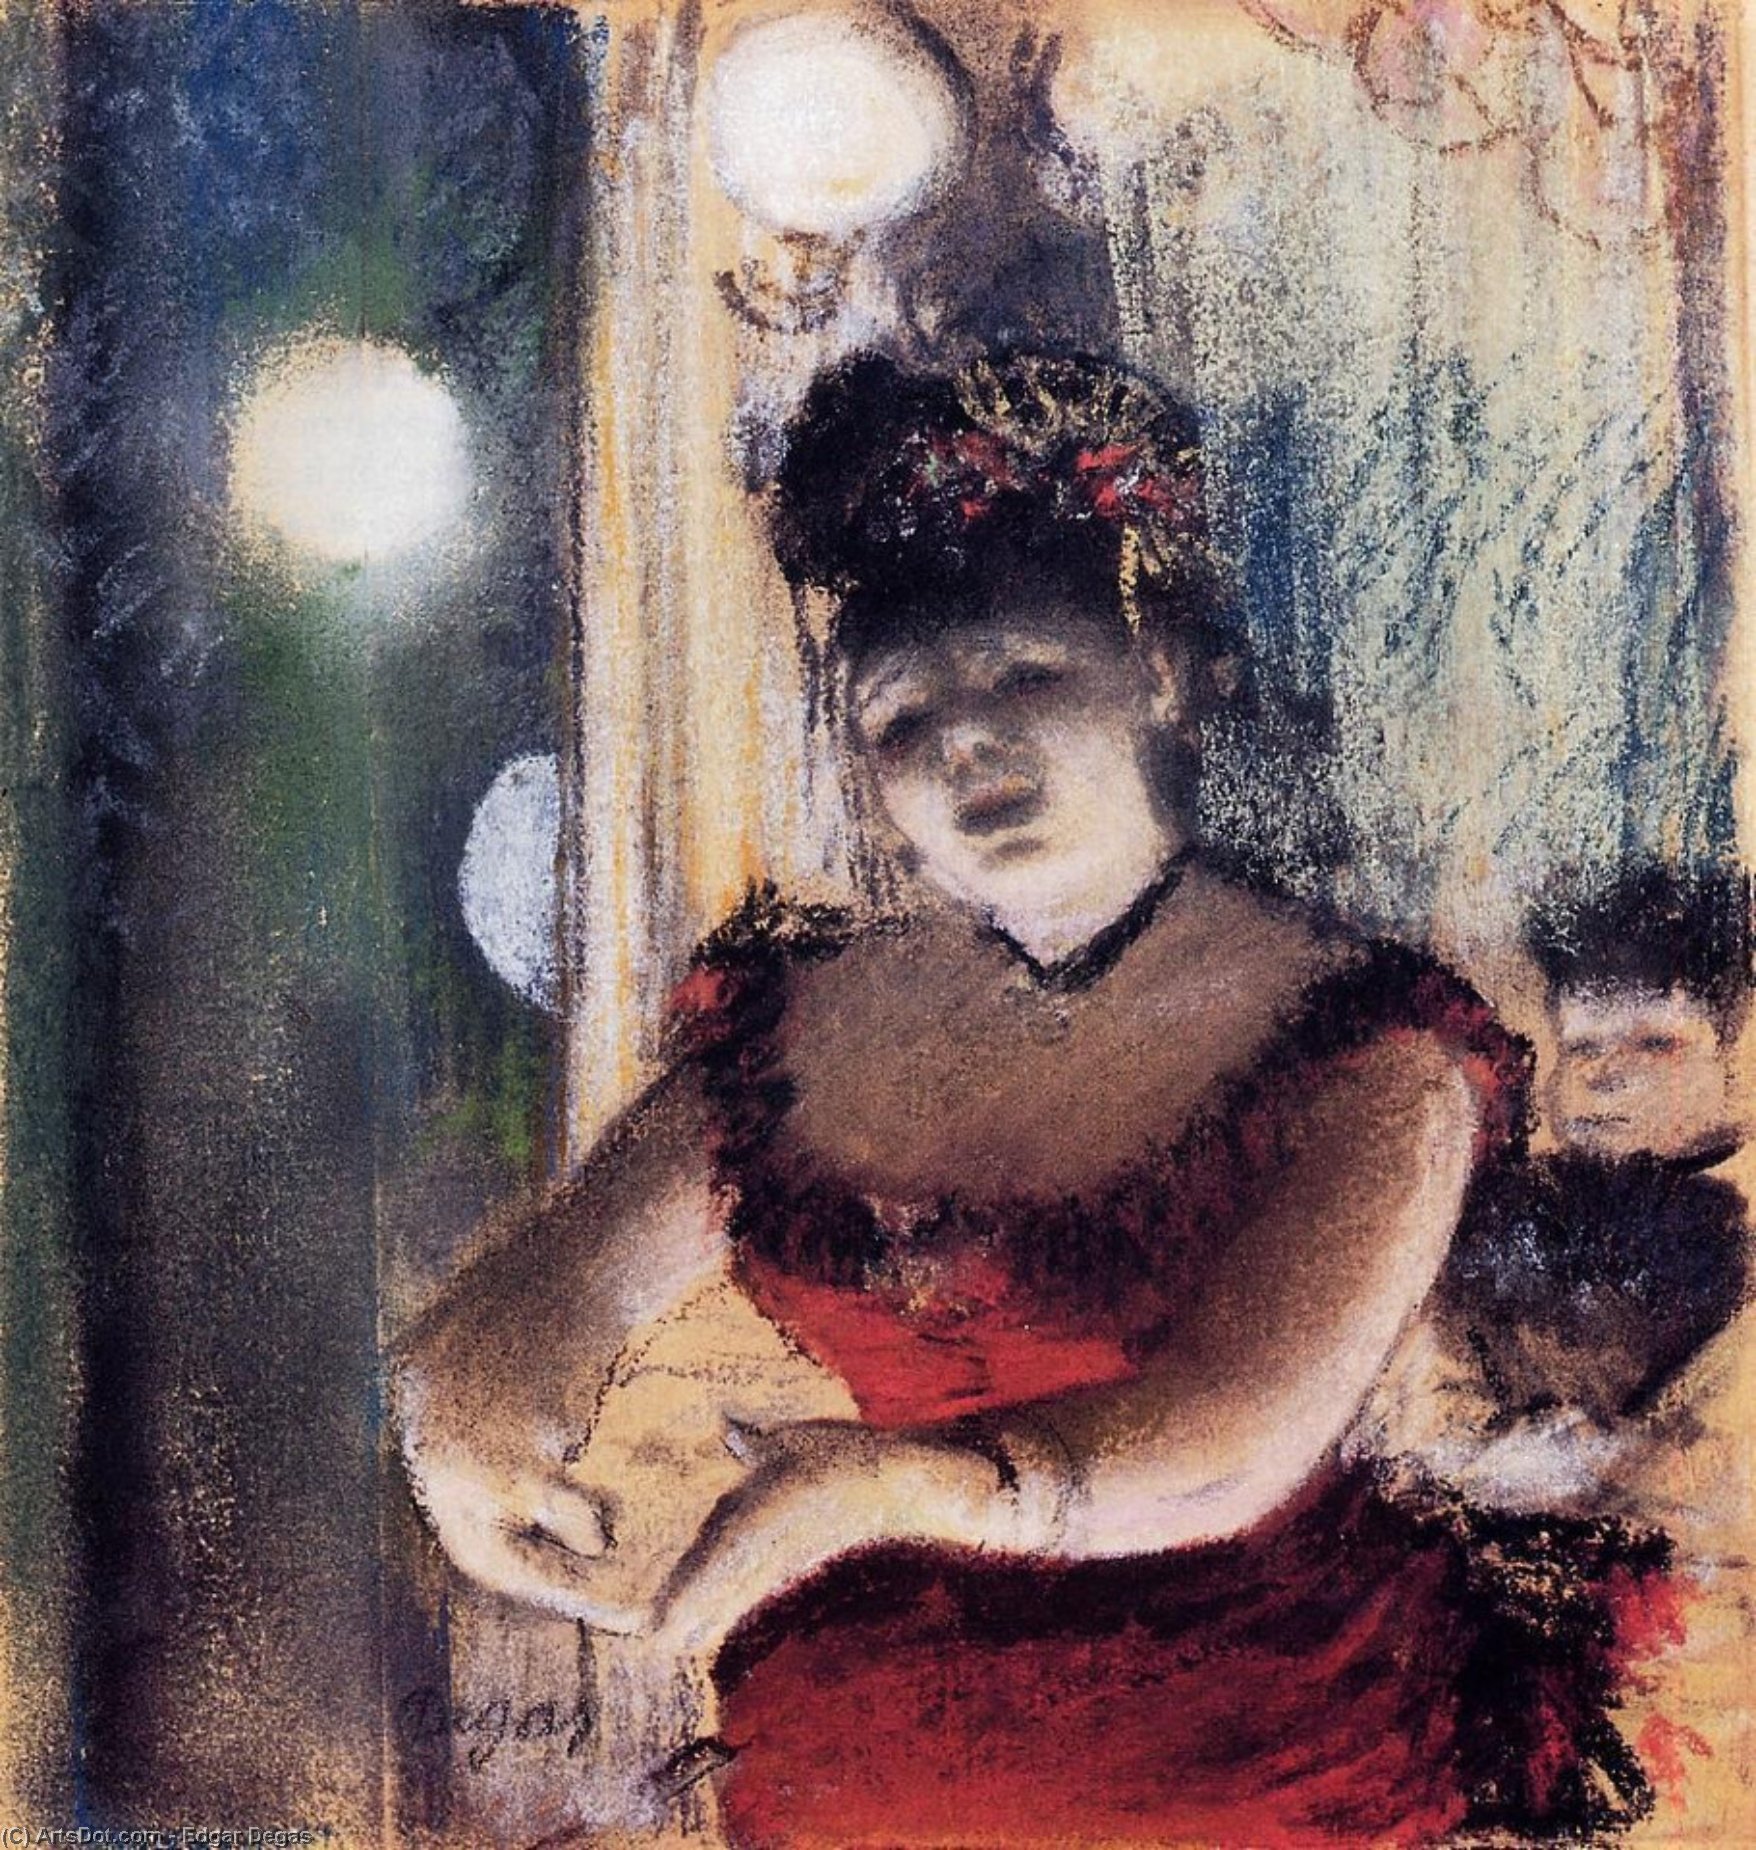 WikiOO.org - אנציקלופדיה לאמנויות יפות - ציור, יצירות אמנות Edgar Degas - Singer in a Cafe-Concert